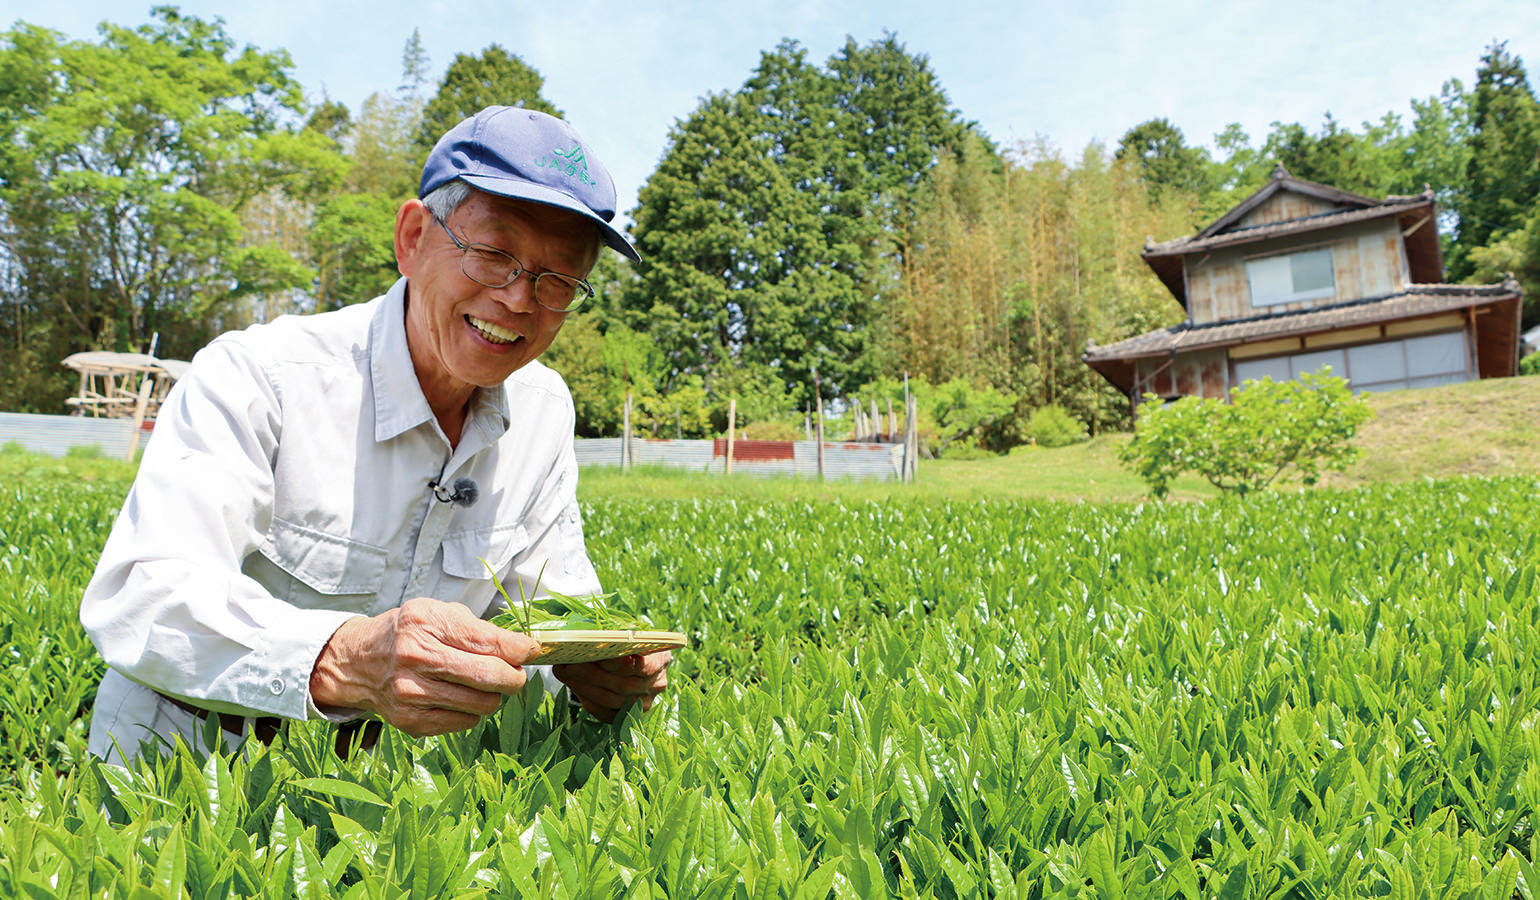 「一芯二葉」に伸びた柔らかい新芽を摘み取る藤田部会長。江戸時代から続く高梁の茶文化を後世につなげるべく奮闘している